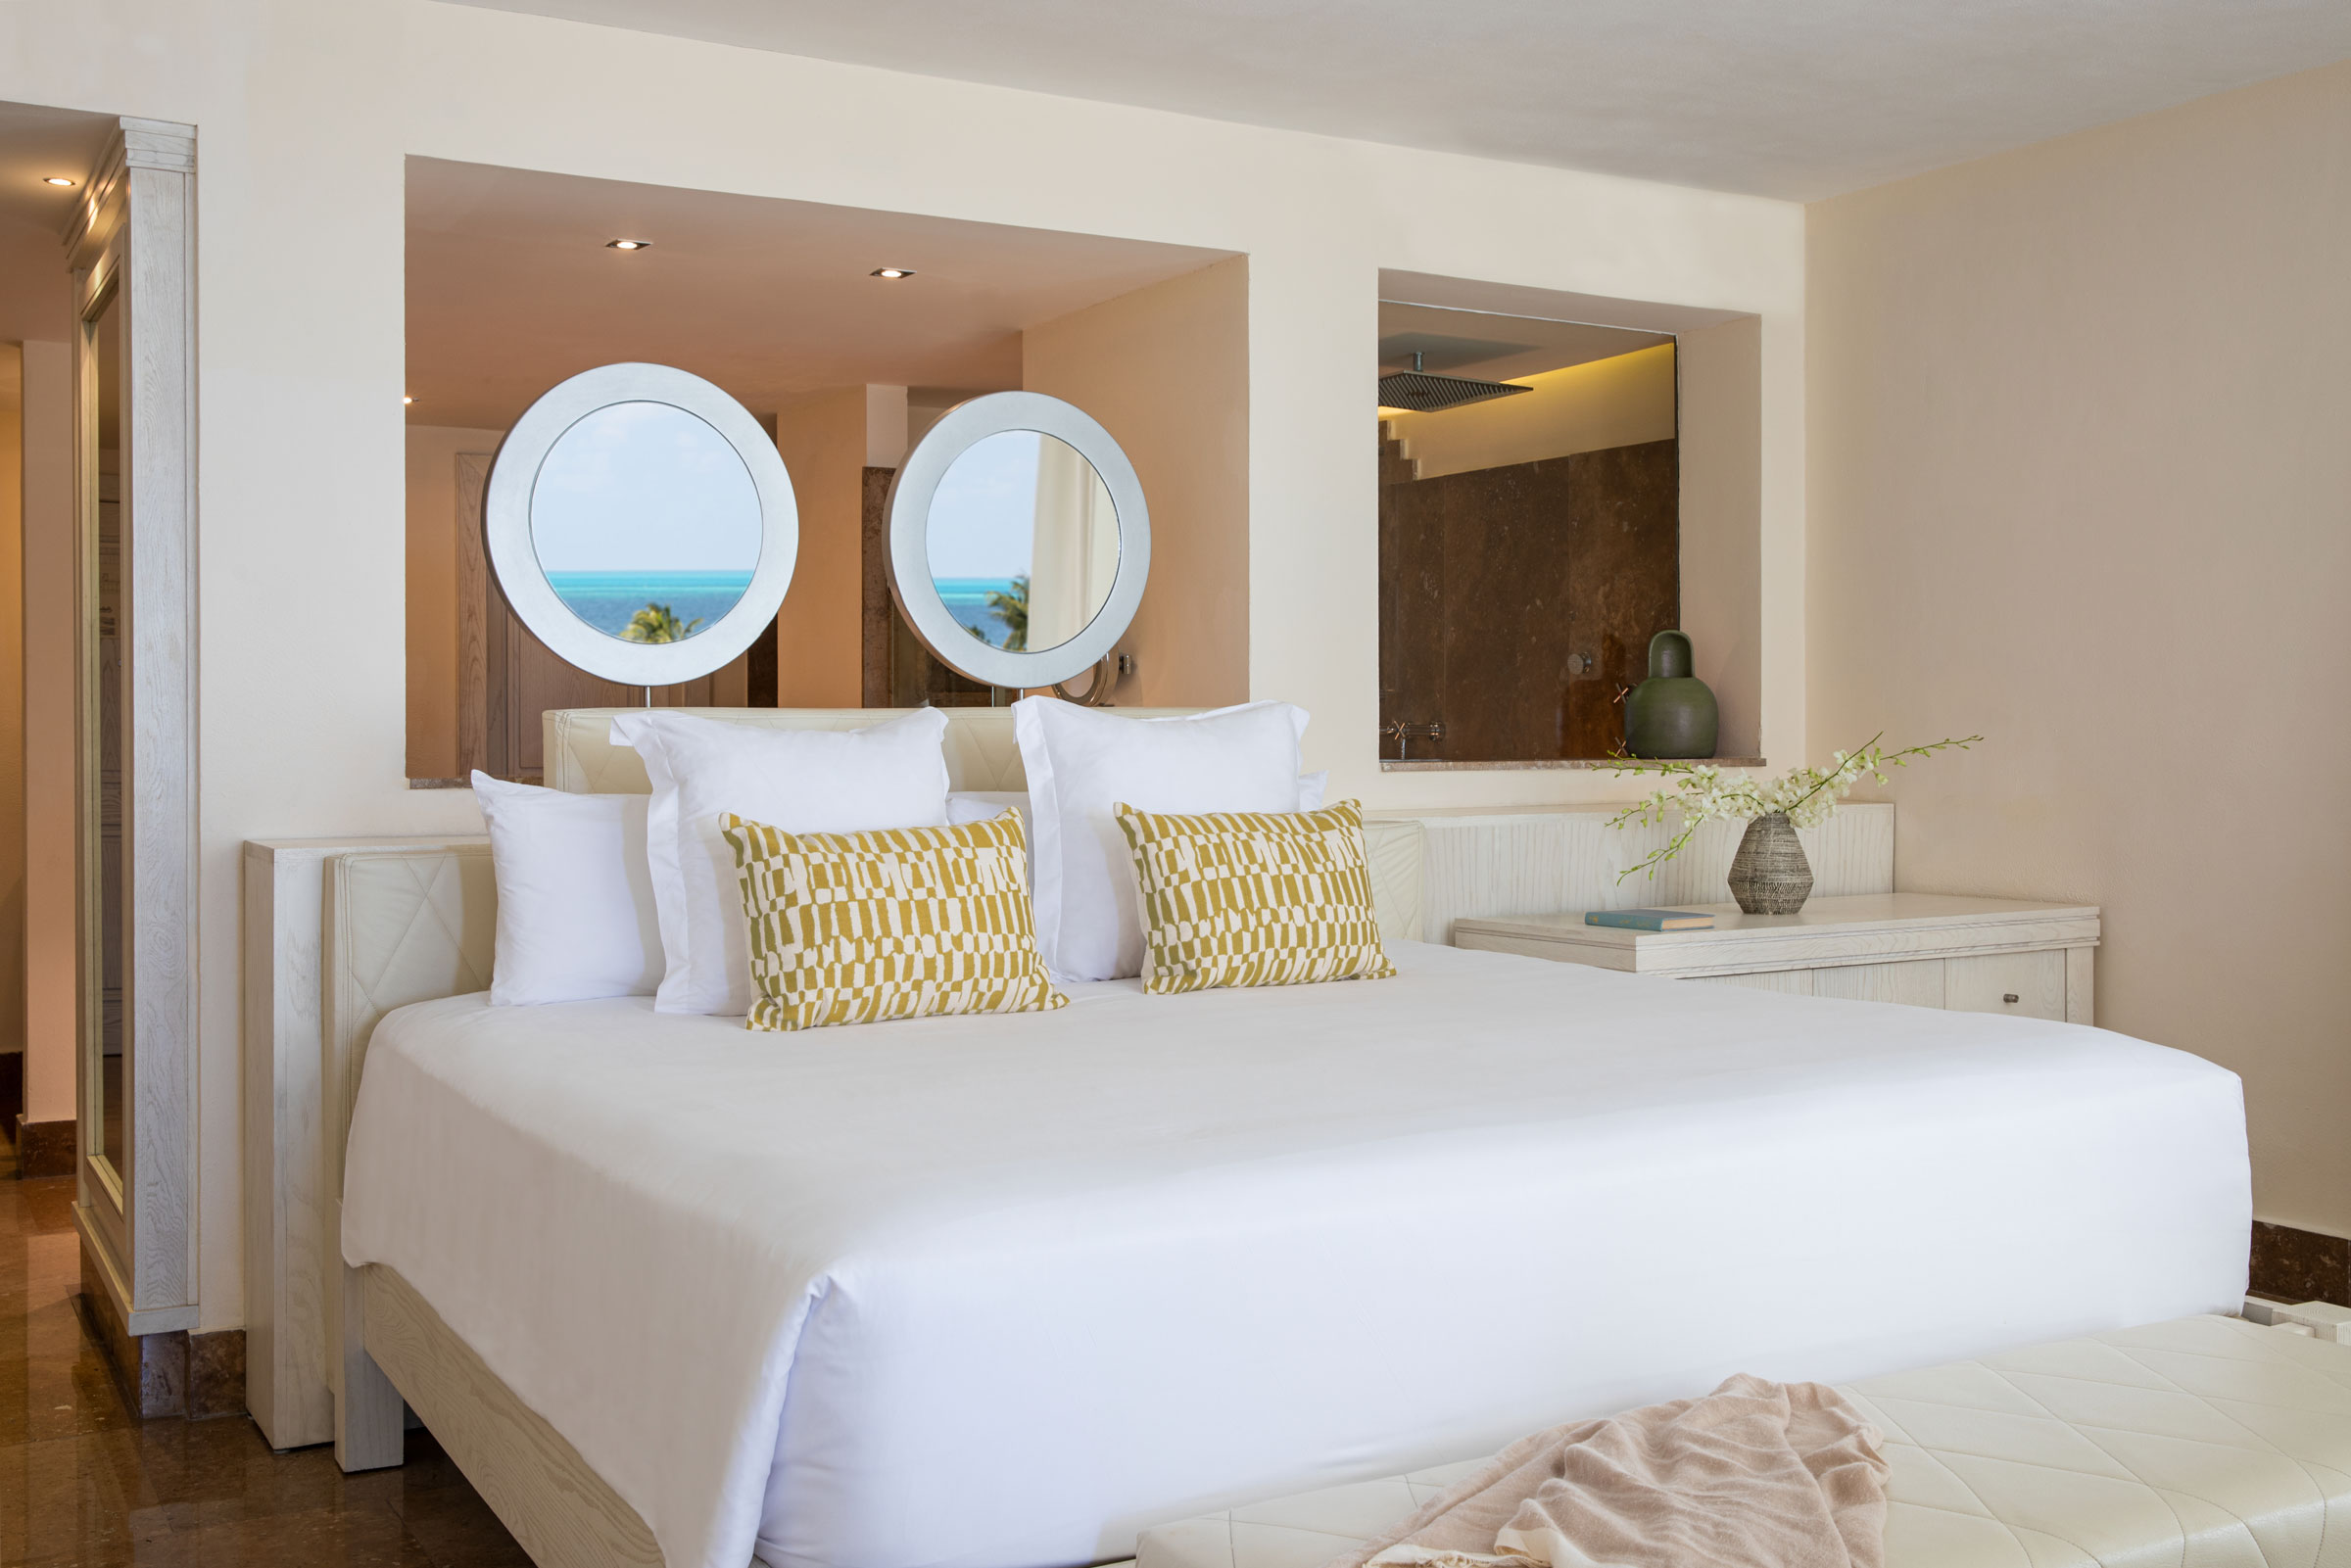 Suites d’hôtel avec vue sur mer au Mexique